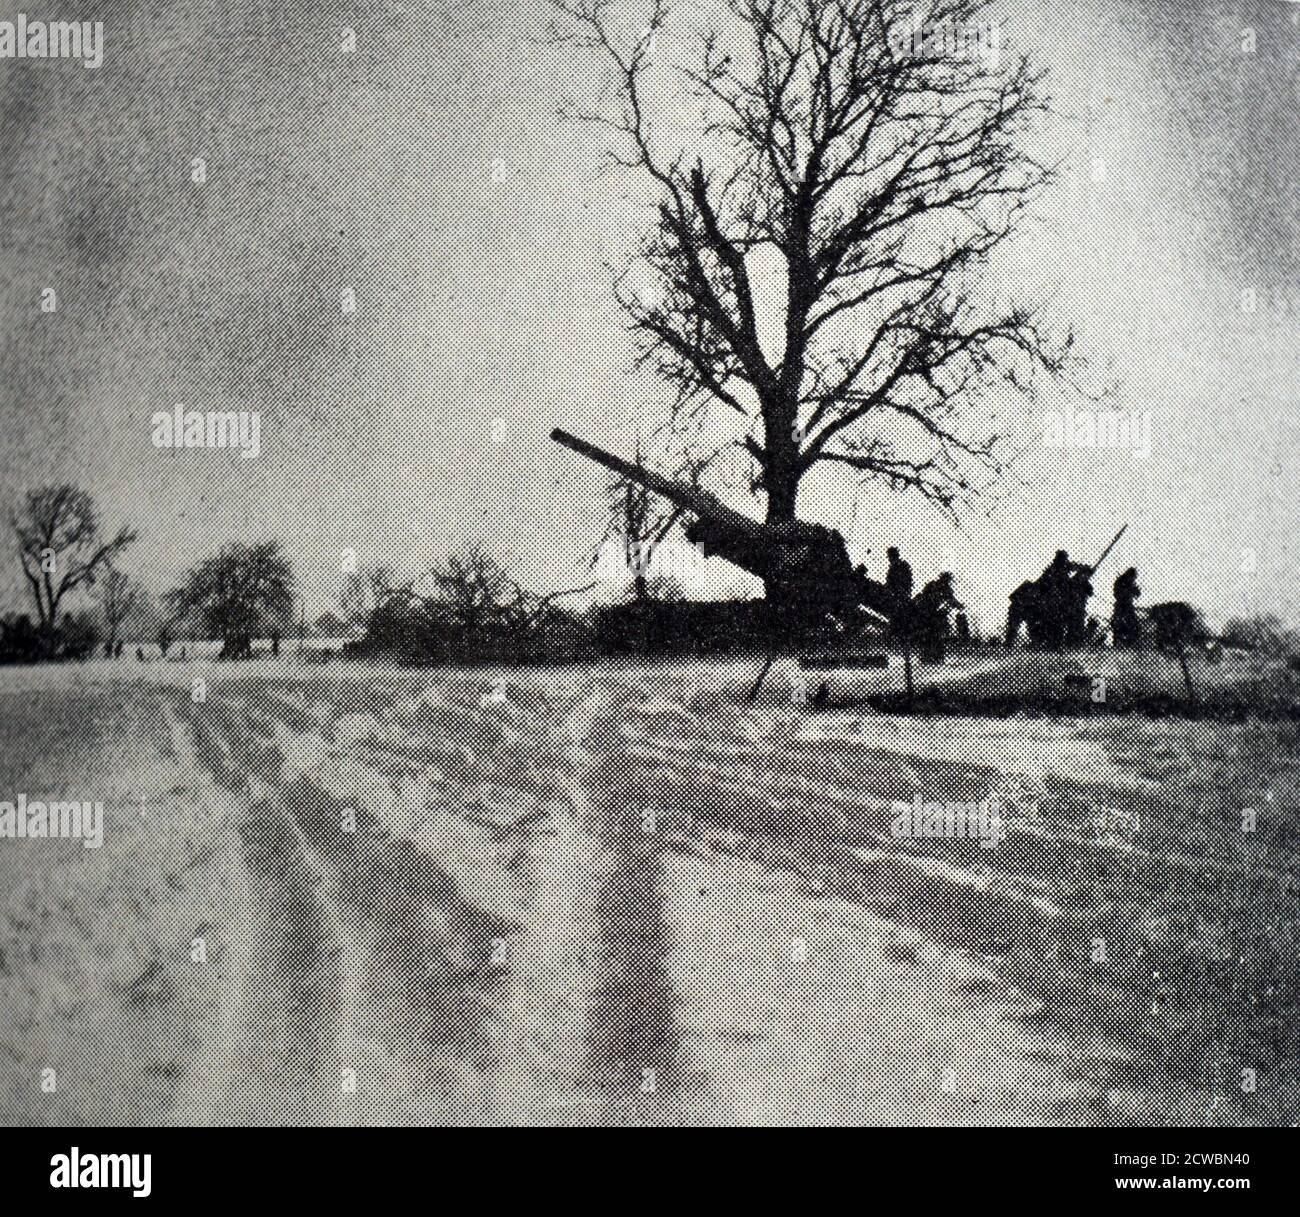 Fotografia in bianco e nero della seconda guerra mondiale (1939-1945) che mostra immagini relative alla Liberazione di Colmar in Francia, che si è svolta il 2 febbraio 1945; l'alba del 20 gennaio 1945 che mostra le armi alleate pronte ad attaccare. Foto Stock